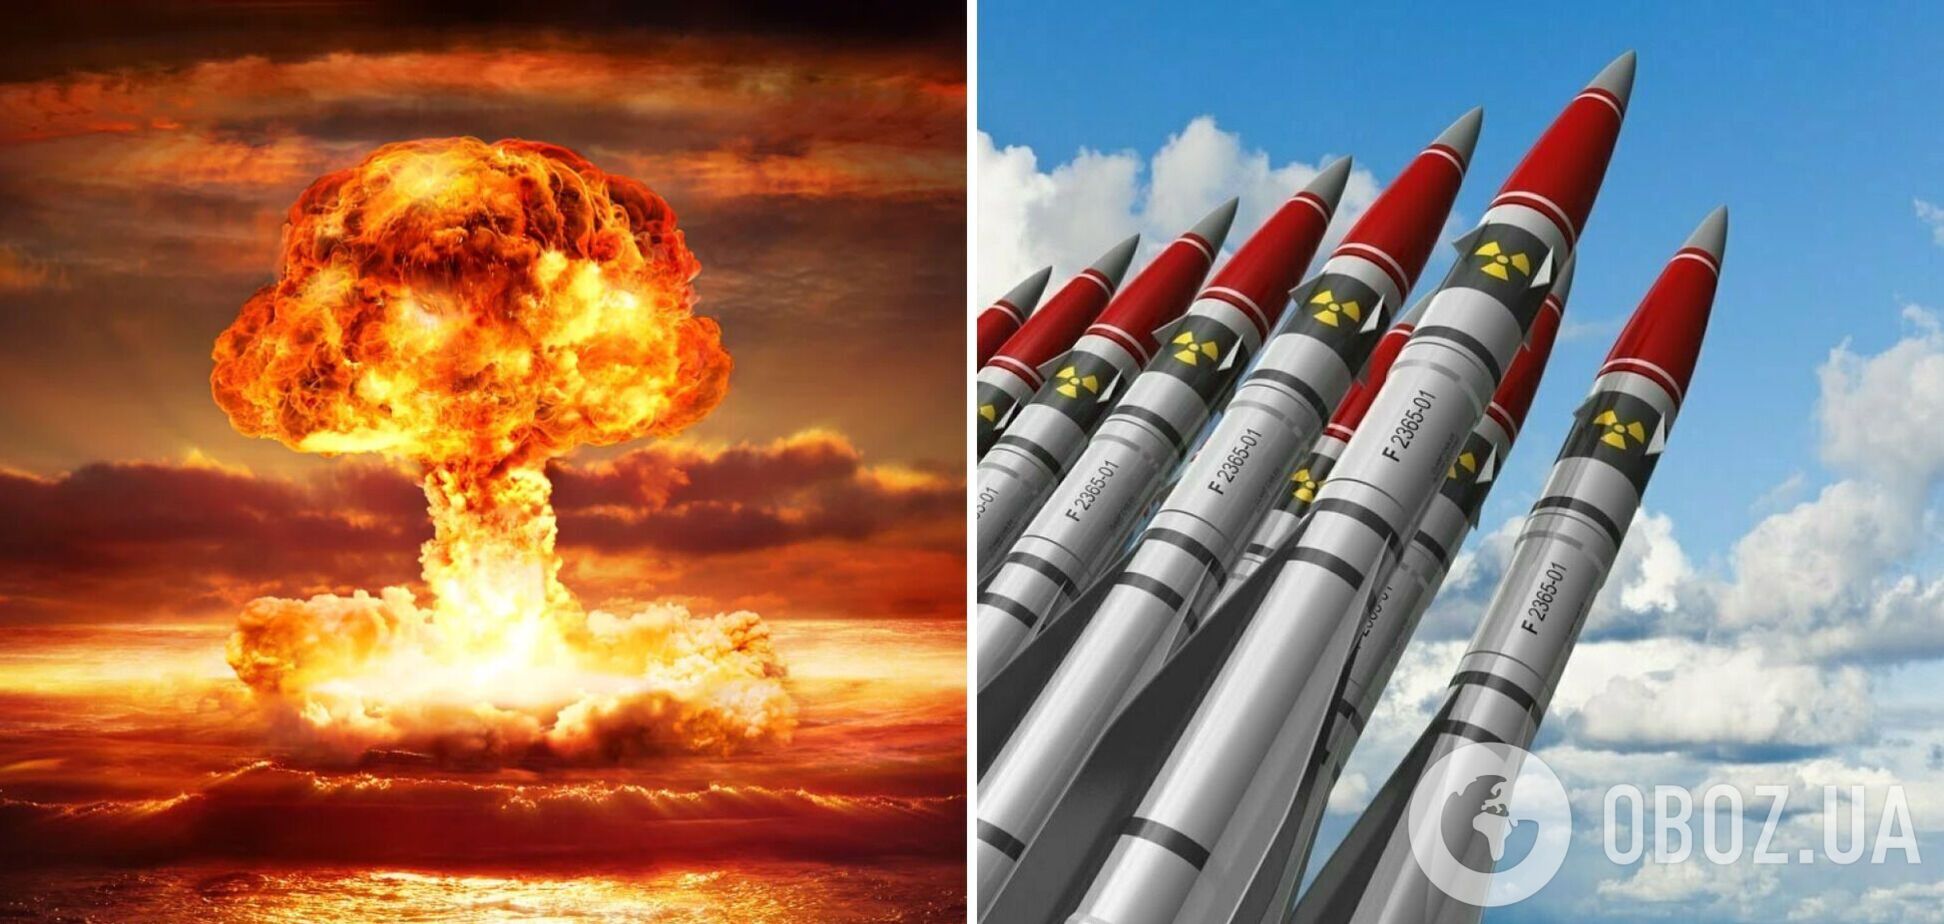 Чи справді в мордорі хтось реально може розпоряджатись ядерною зброєю?